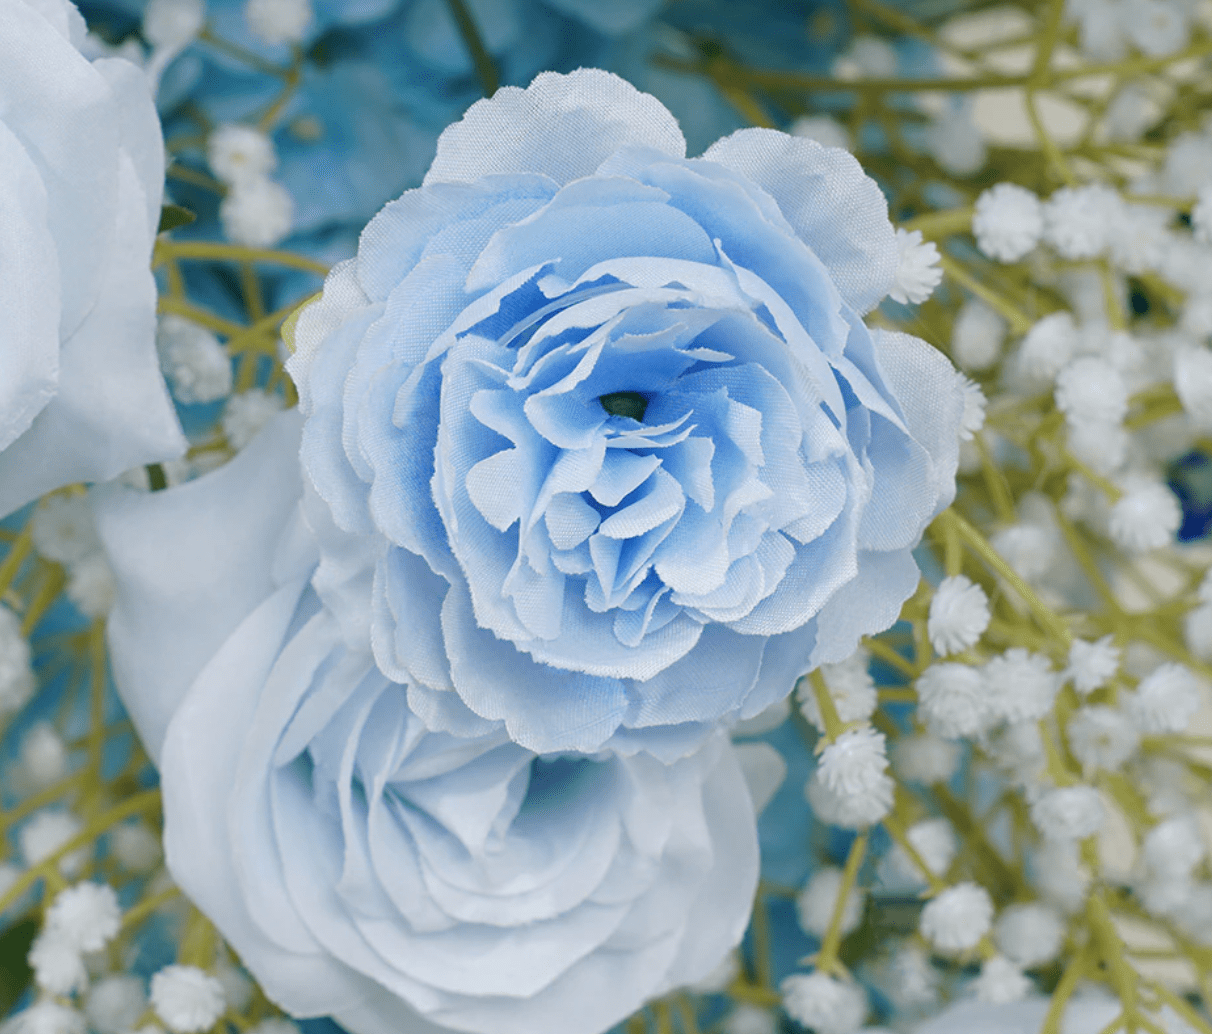 WeddingStory Shop Baby breath blue Wedding Backdrop flowers